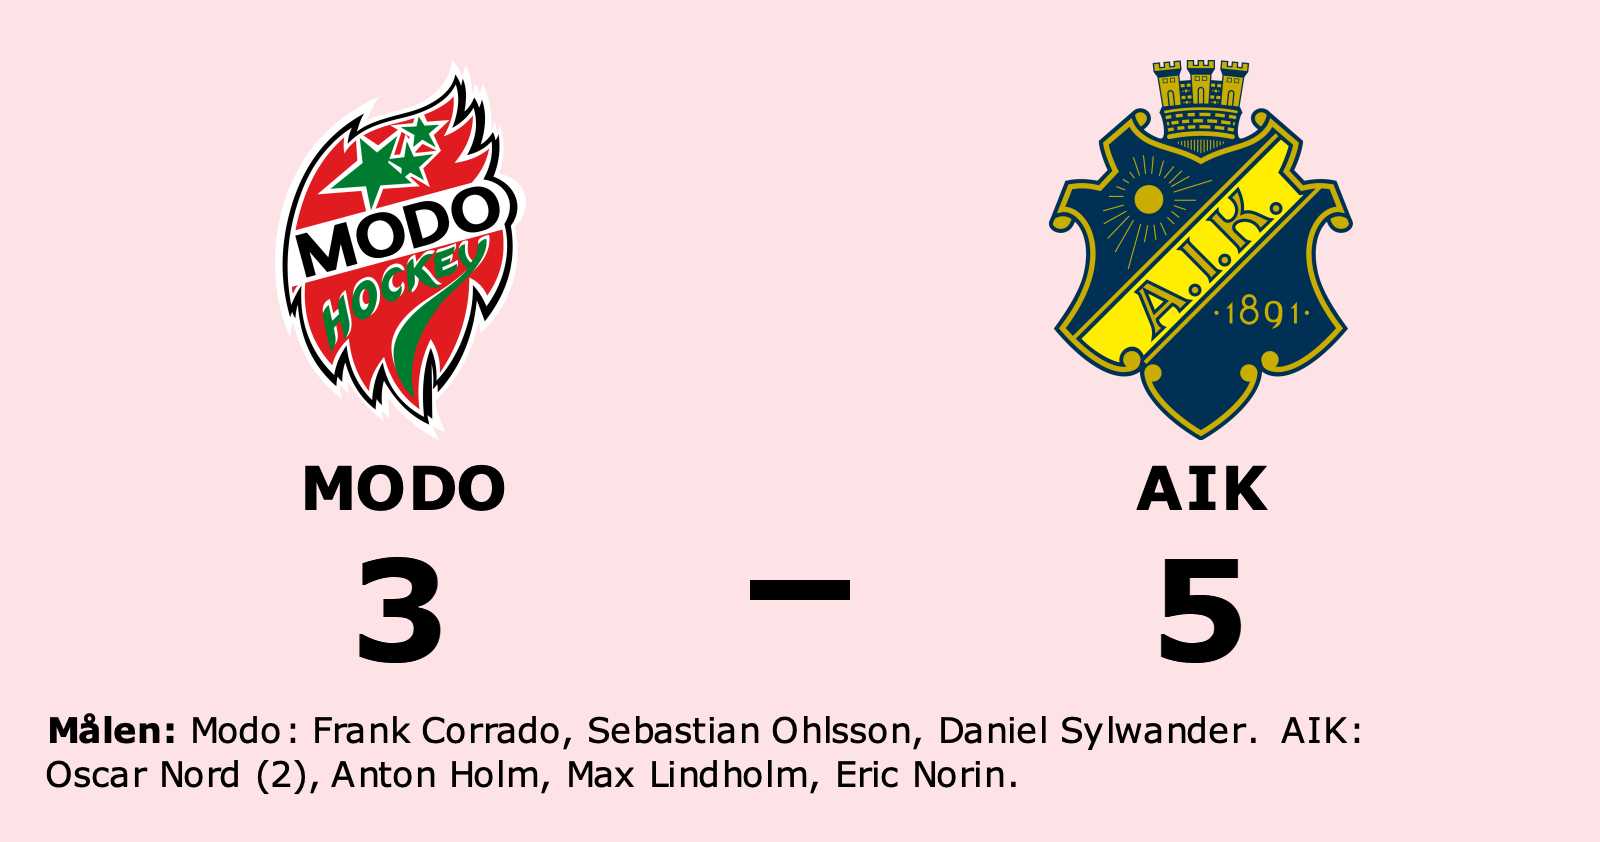 Modo: Modo föll mot AIK på hemmaplan